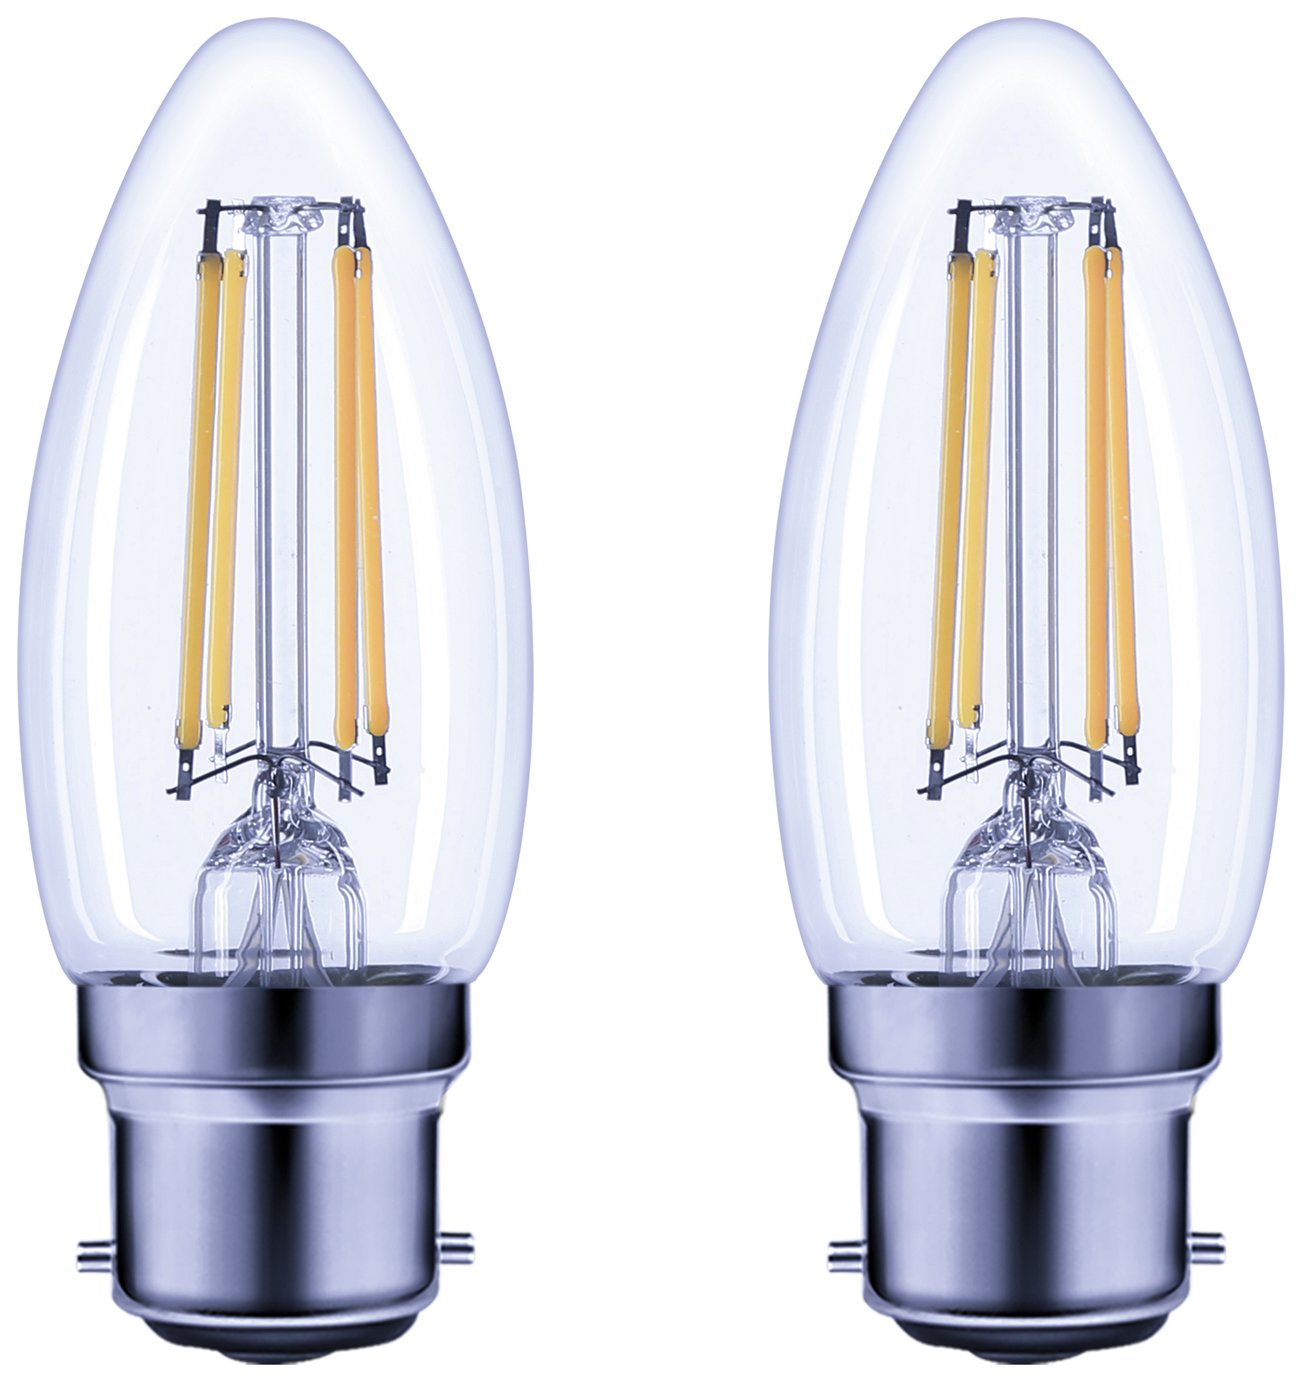 Argos Home 3.4W LED BC Light Bulb - 2 Pack